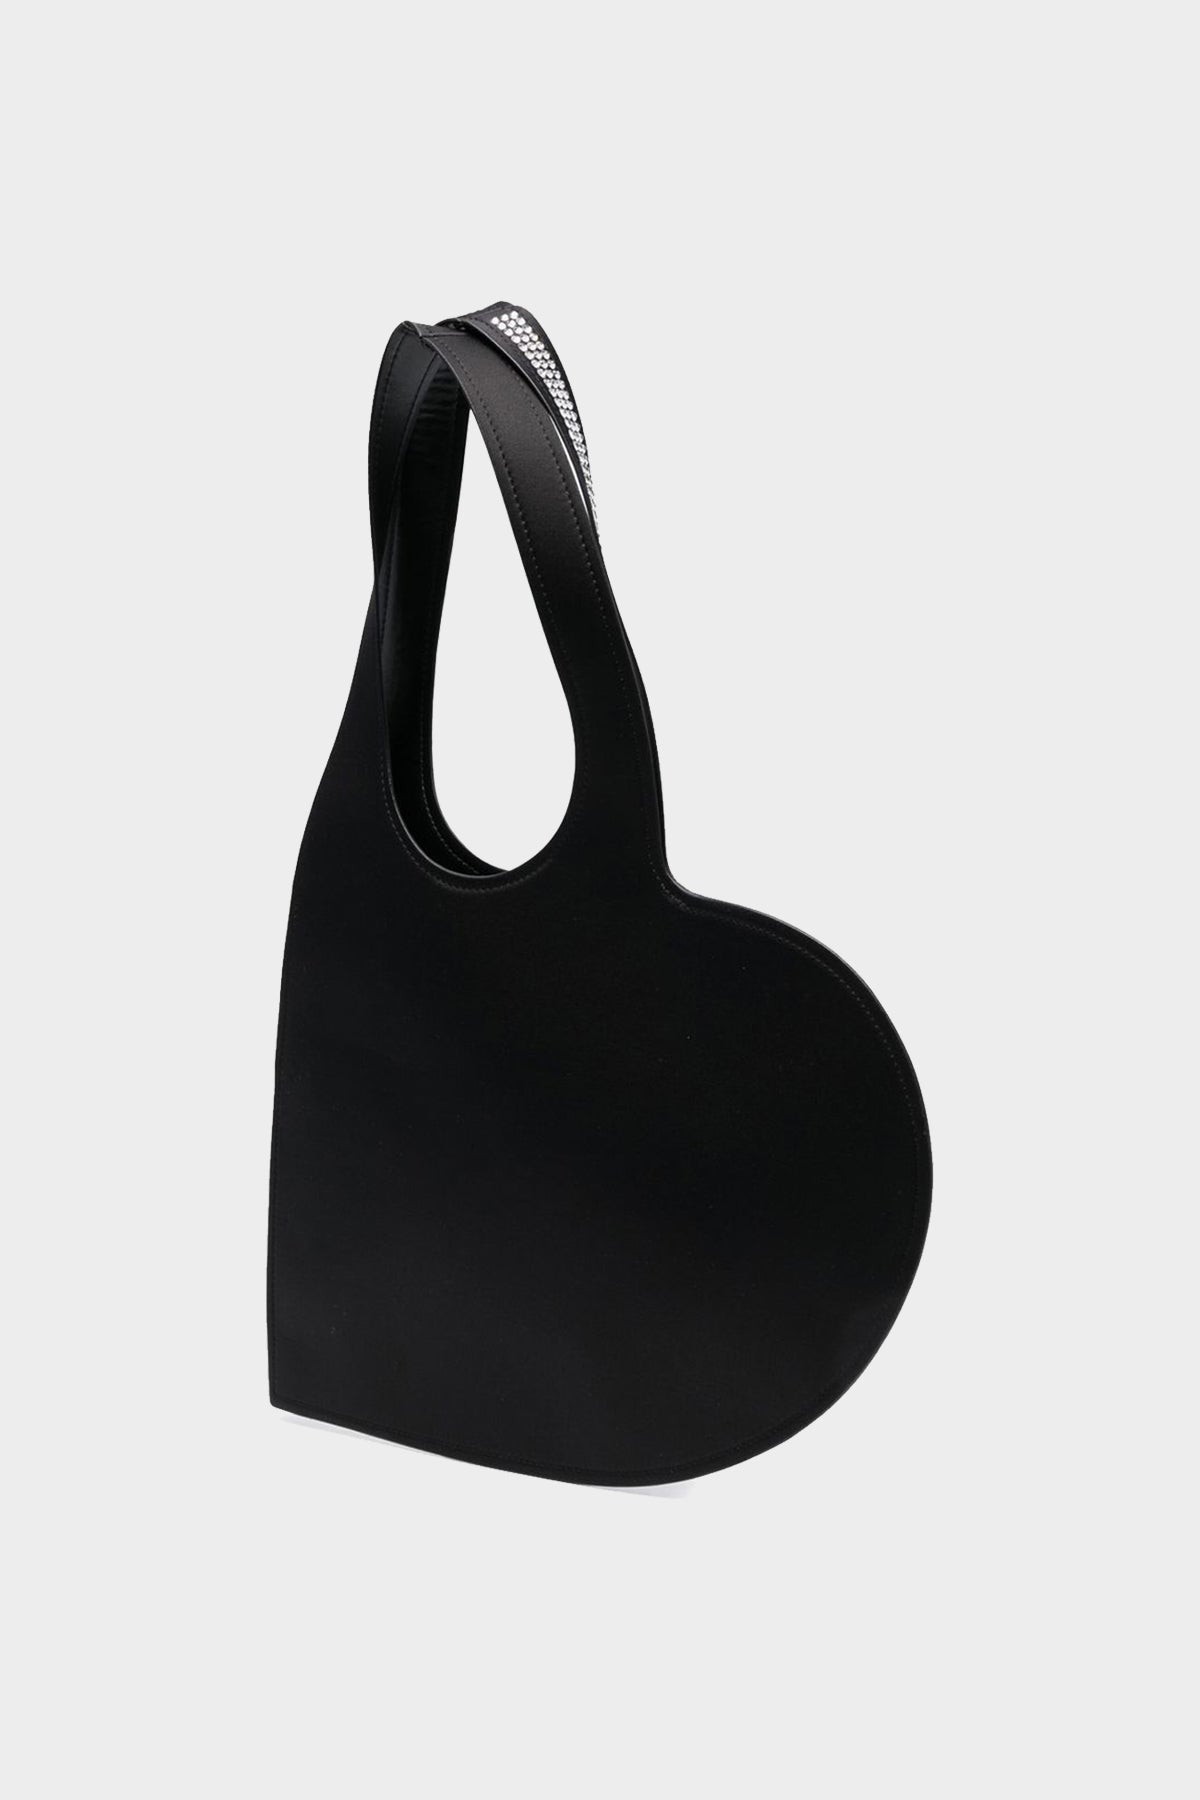 Crystal Embellished Mini Heart Tote Bag in Black - shop-olivia.com